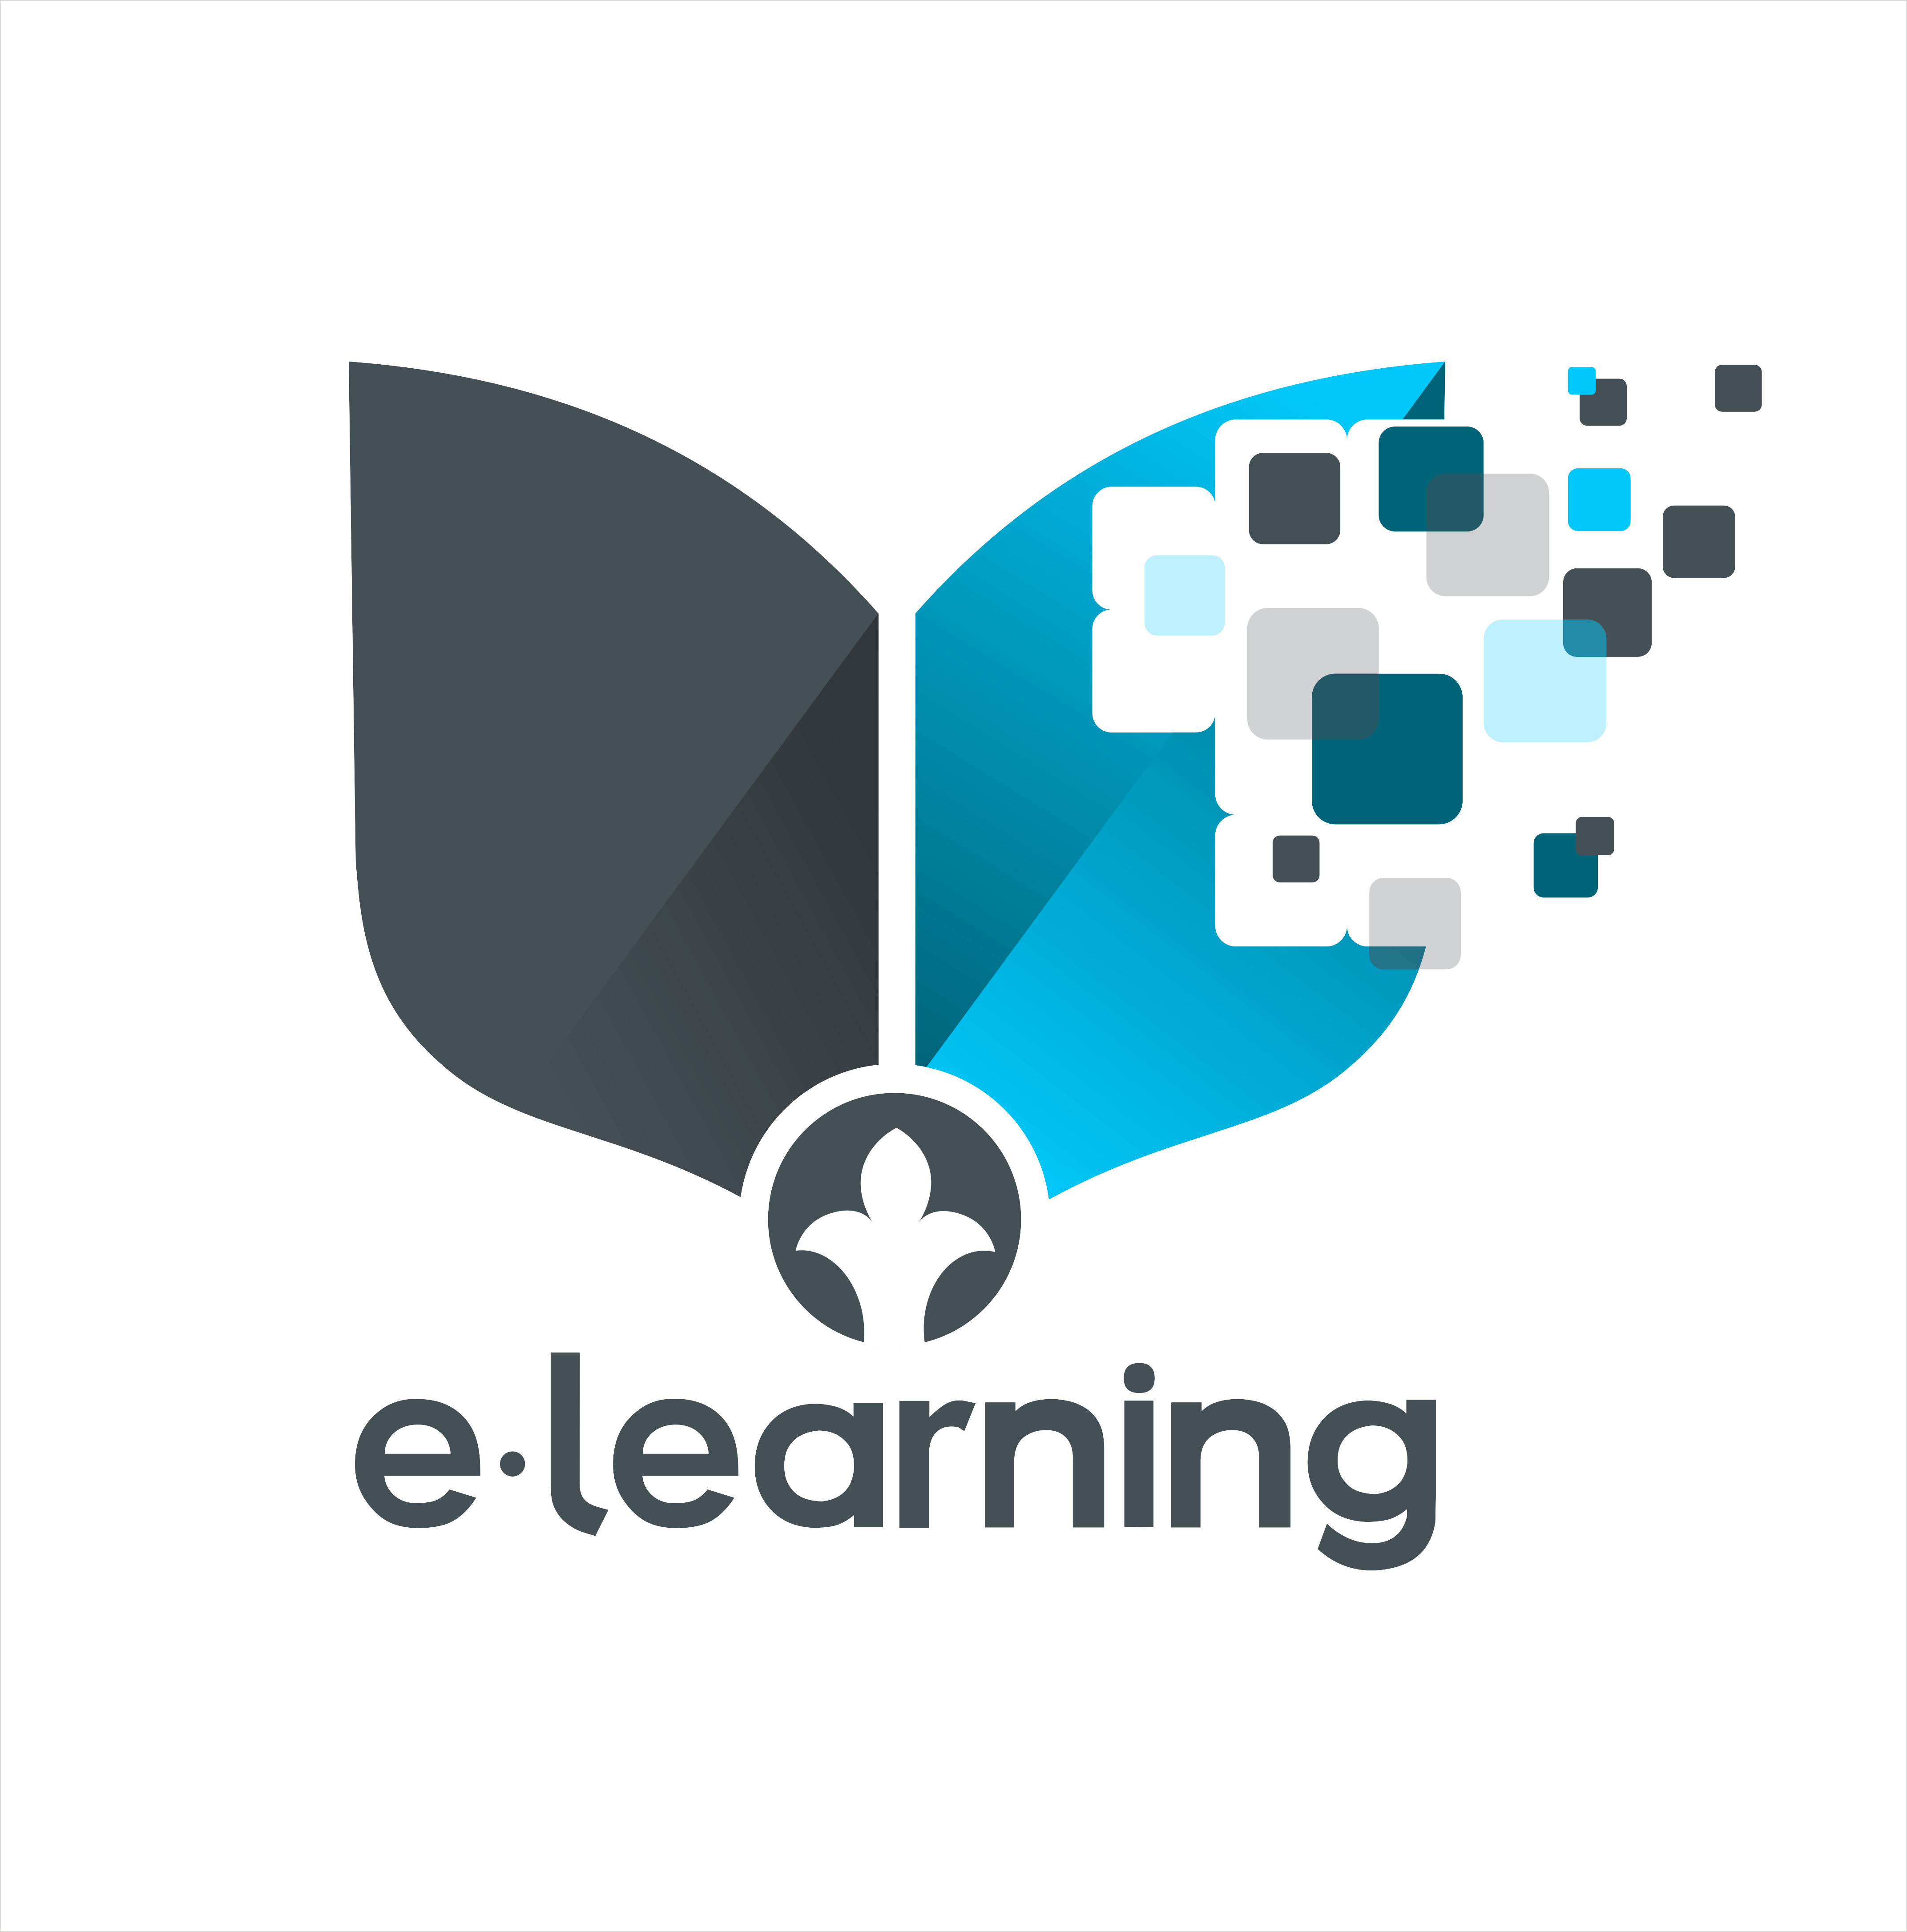 Learning Logo - Learning Logos